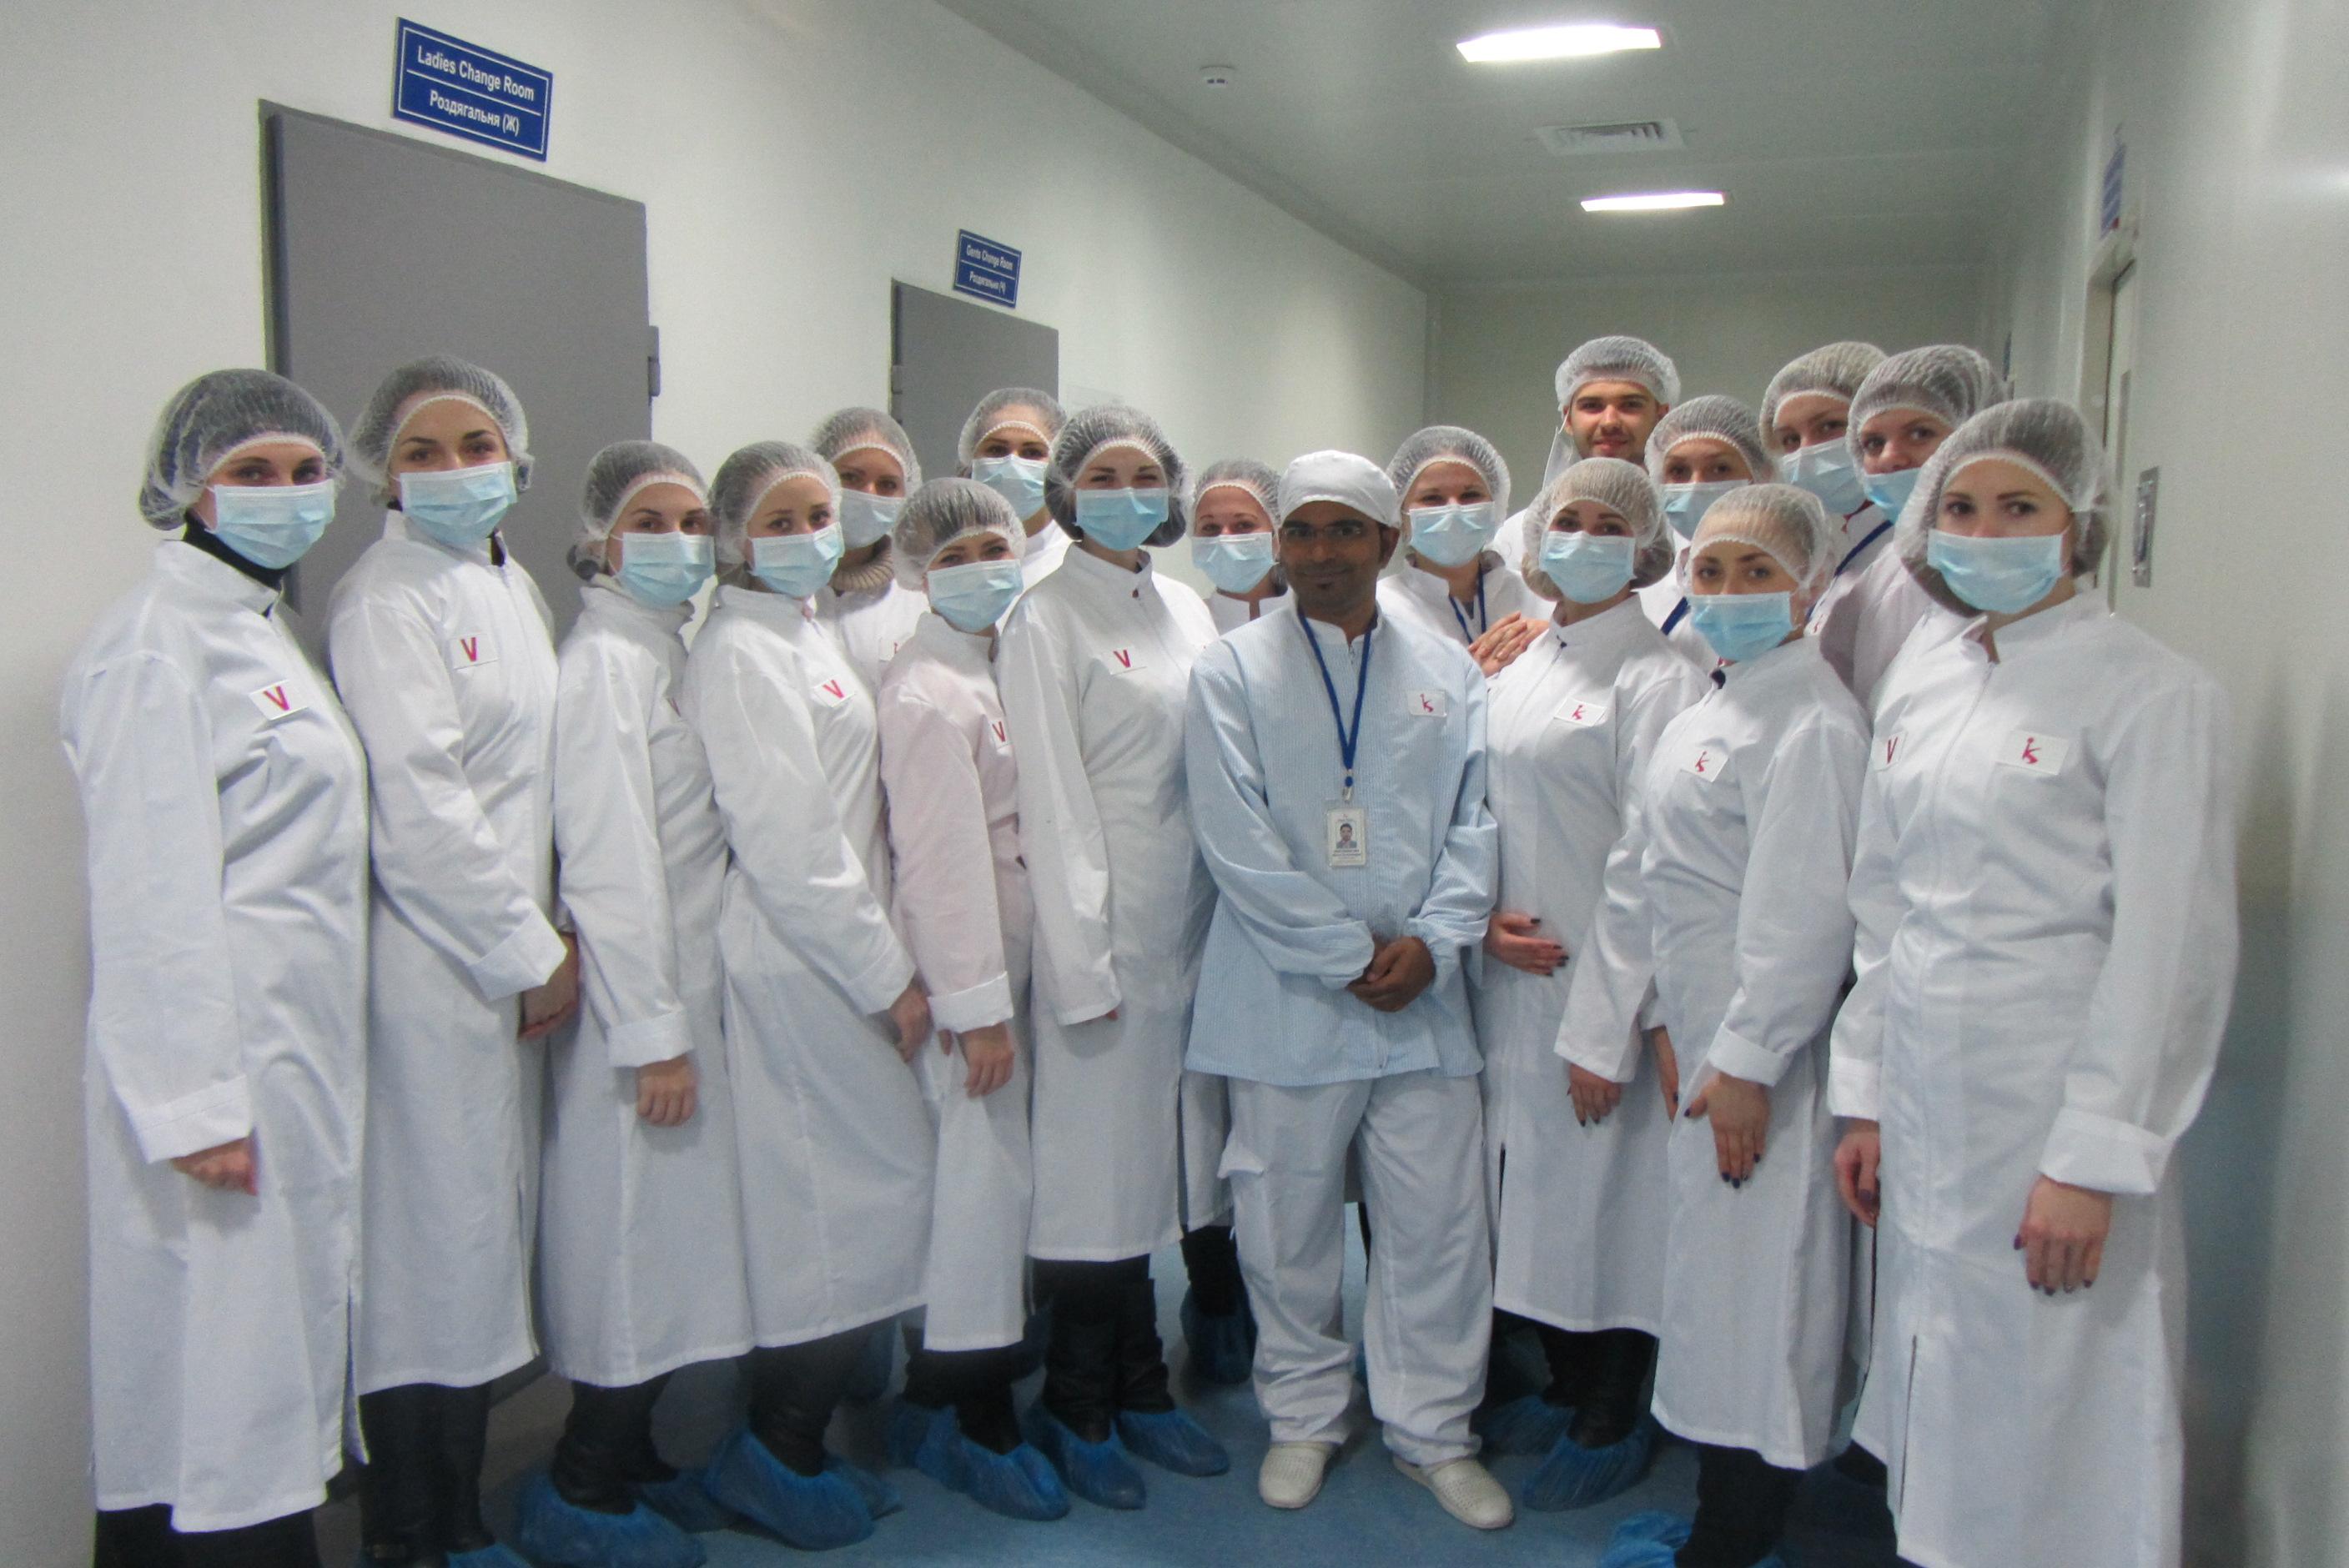 17 грудня 2015 року відбулась екскурсія на виробництво для студентів 4 курсу спеціальності «Фармація» на базі ТОВ «Кусум-Фарм» (м. Суми), організатори — НФаУ, відділ практики та сприяння працевлаштуванню, кафедра Заводської технології ліків.